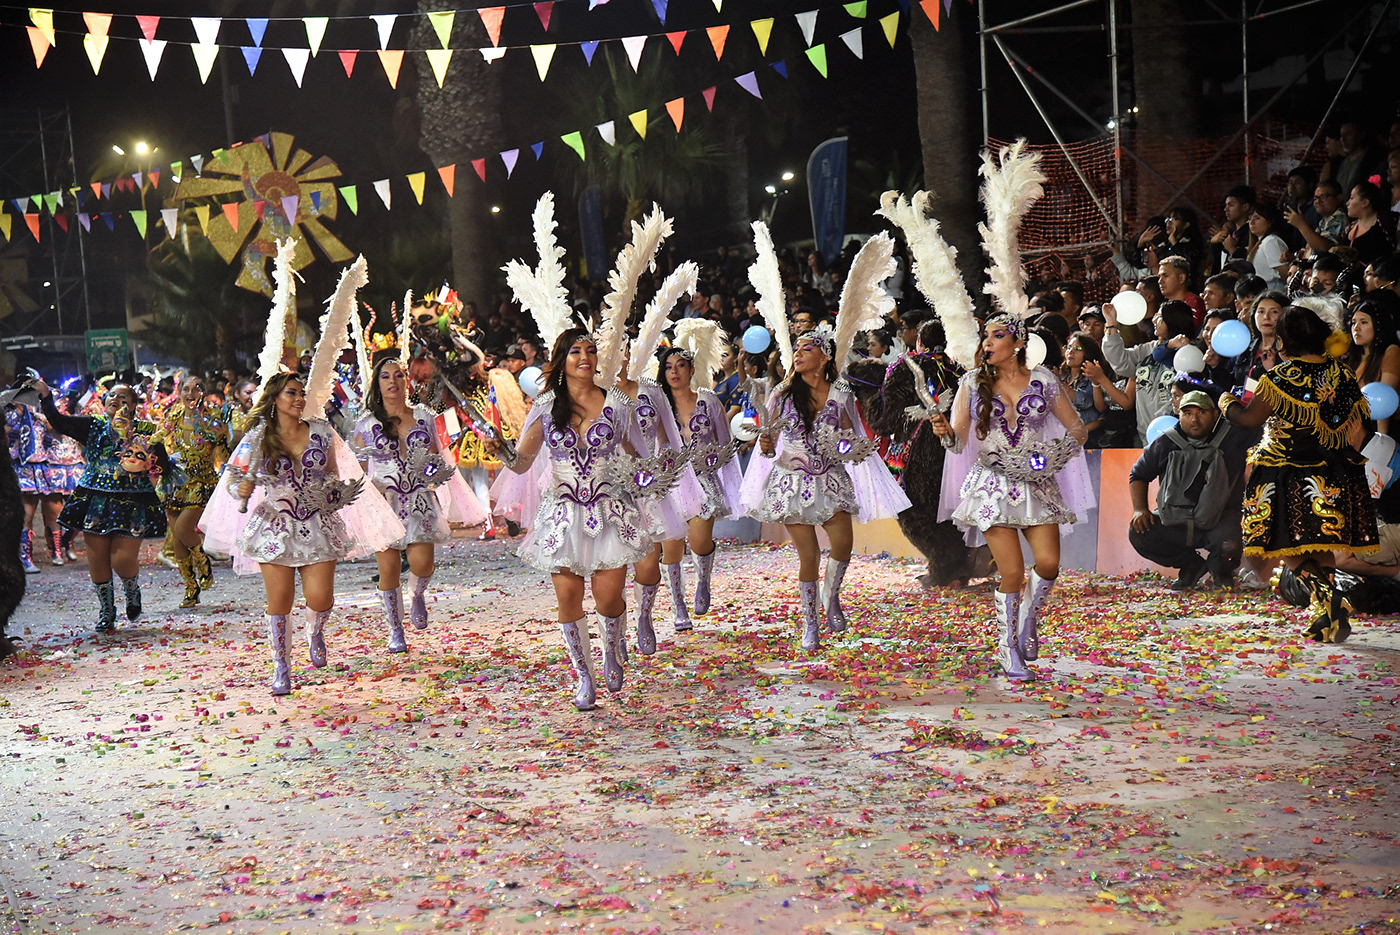 Tirana arica Carnaval peru bolivia janeiro rio